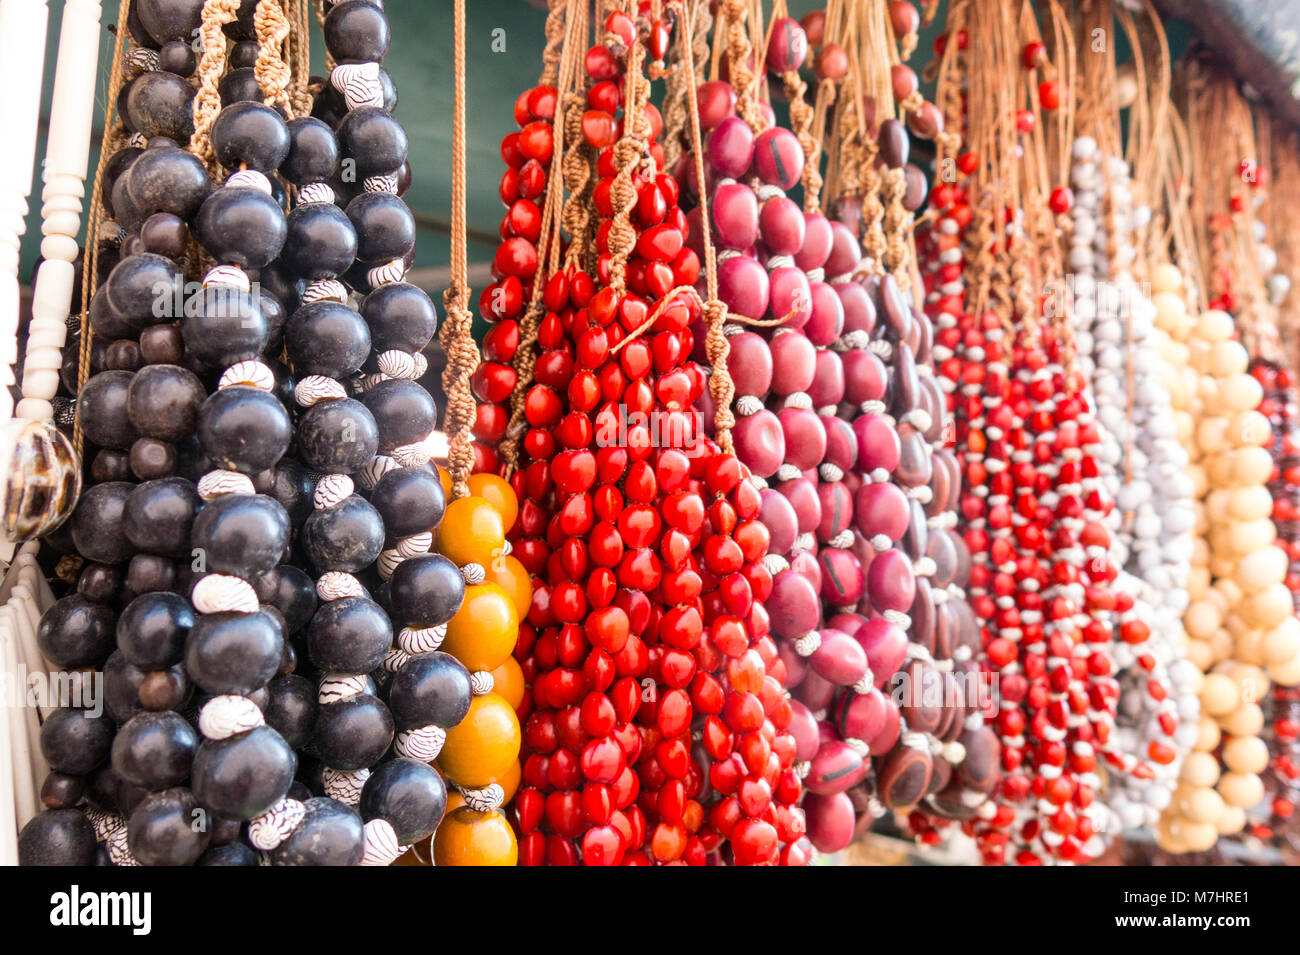 Souvenirs cubaine : collier de graines. Populaire dans les comptes cubains,  organique bijoux fabriqués à partir de graines des Caraïbes. Marché de rue  Ville de Cienfuegos, Cuba Photo Stock - Alamy